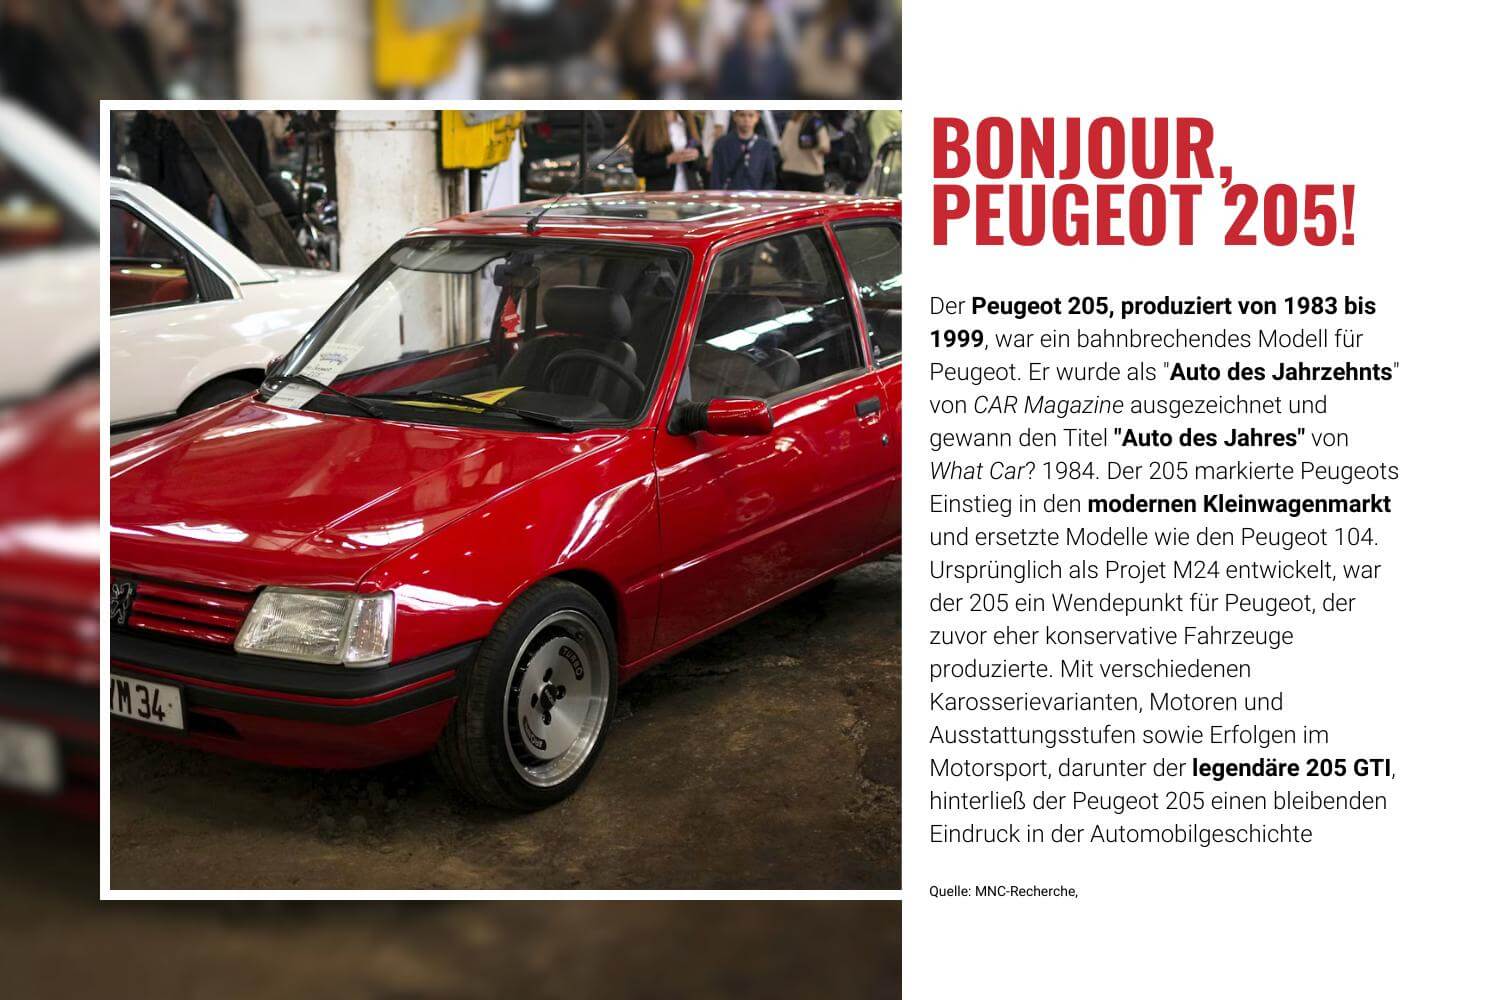 Peugeot Oldtimer